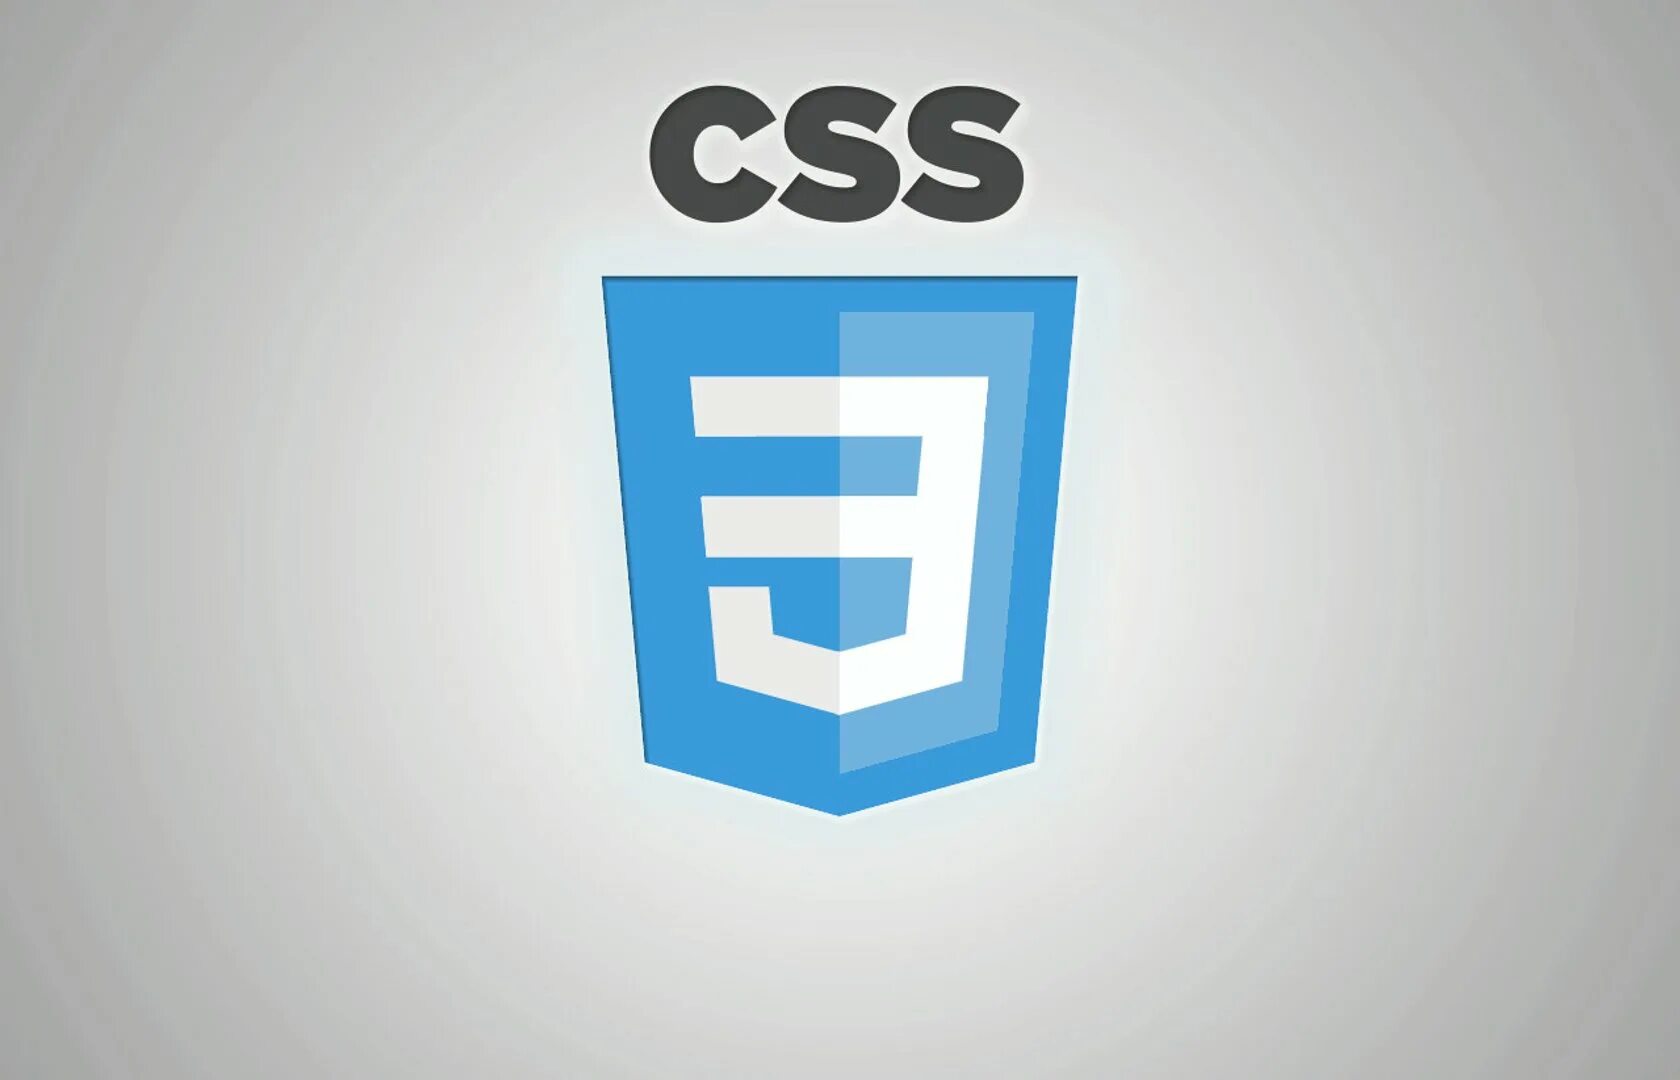 Css3 логотип. Значок css3. CSS эмблема. CSS лого.